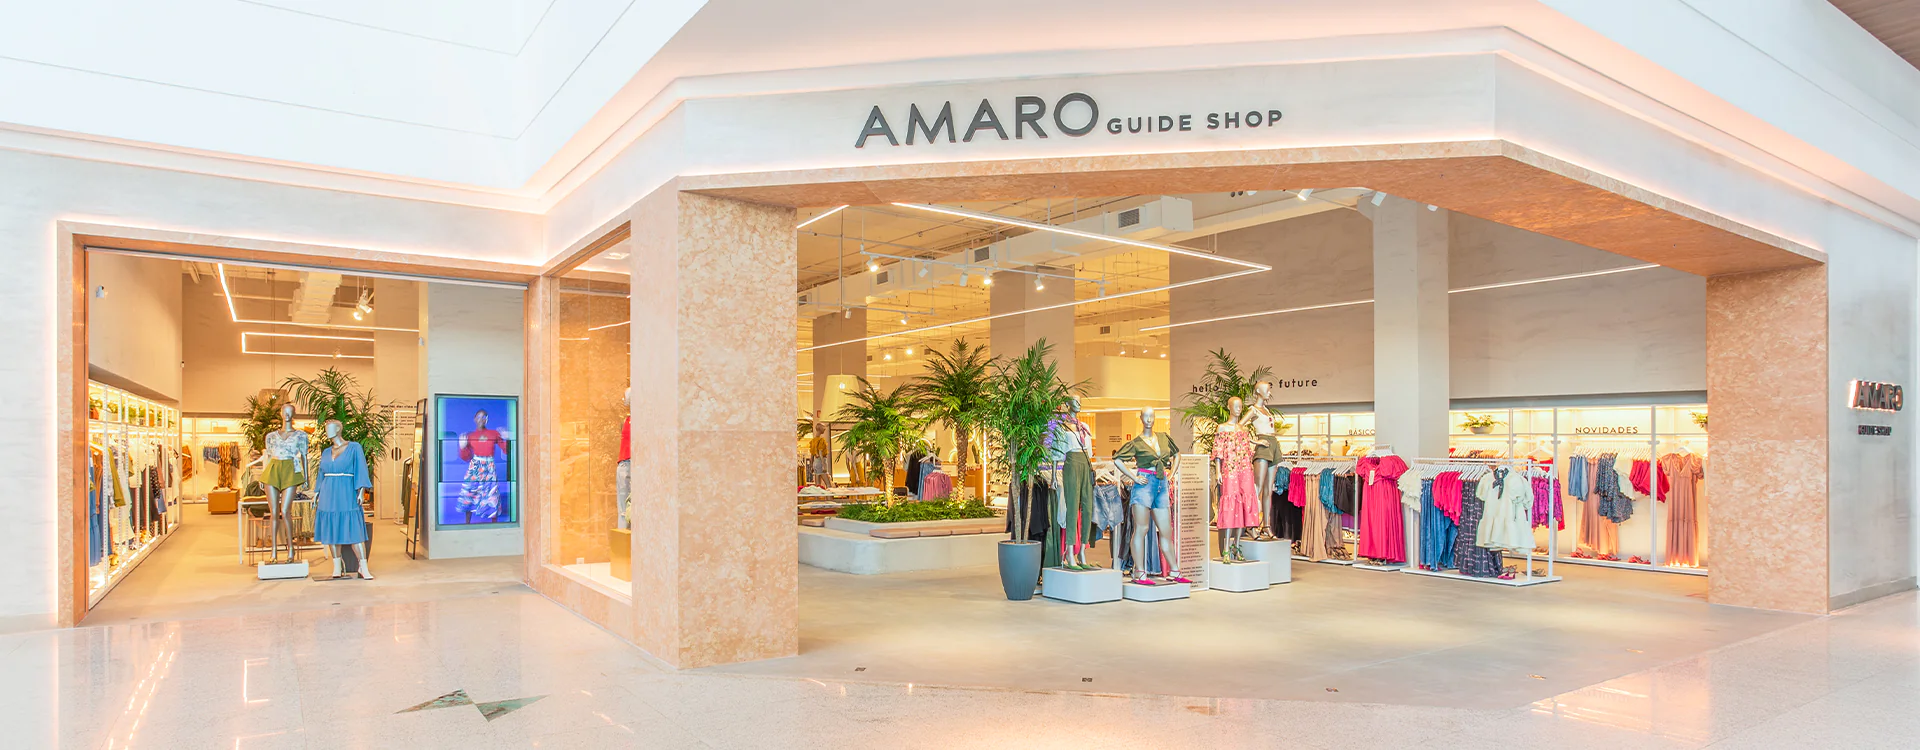 Case Amaro: a transformação no e-commerce com guide shops